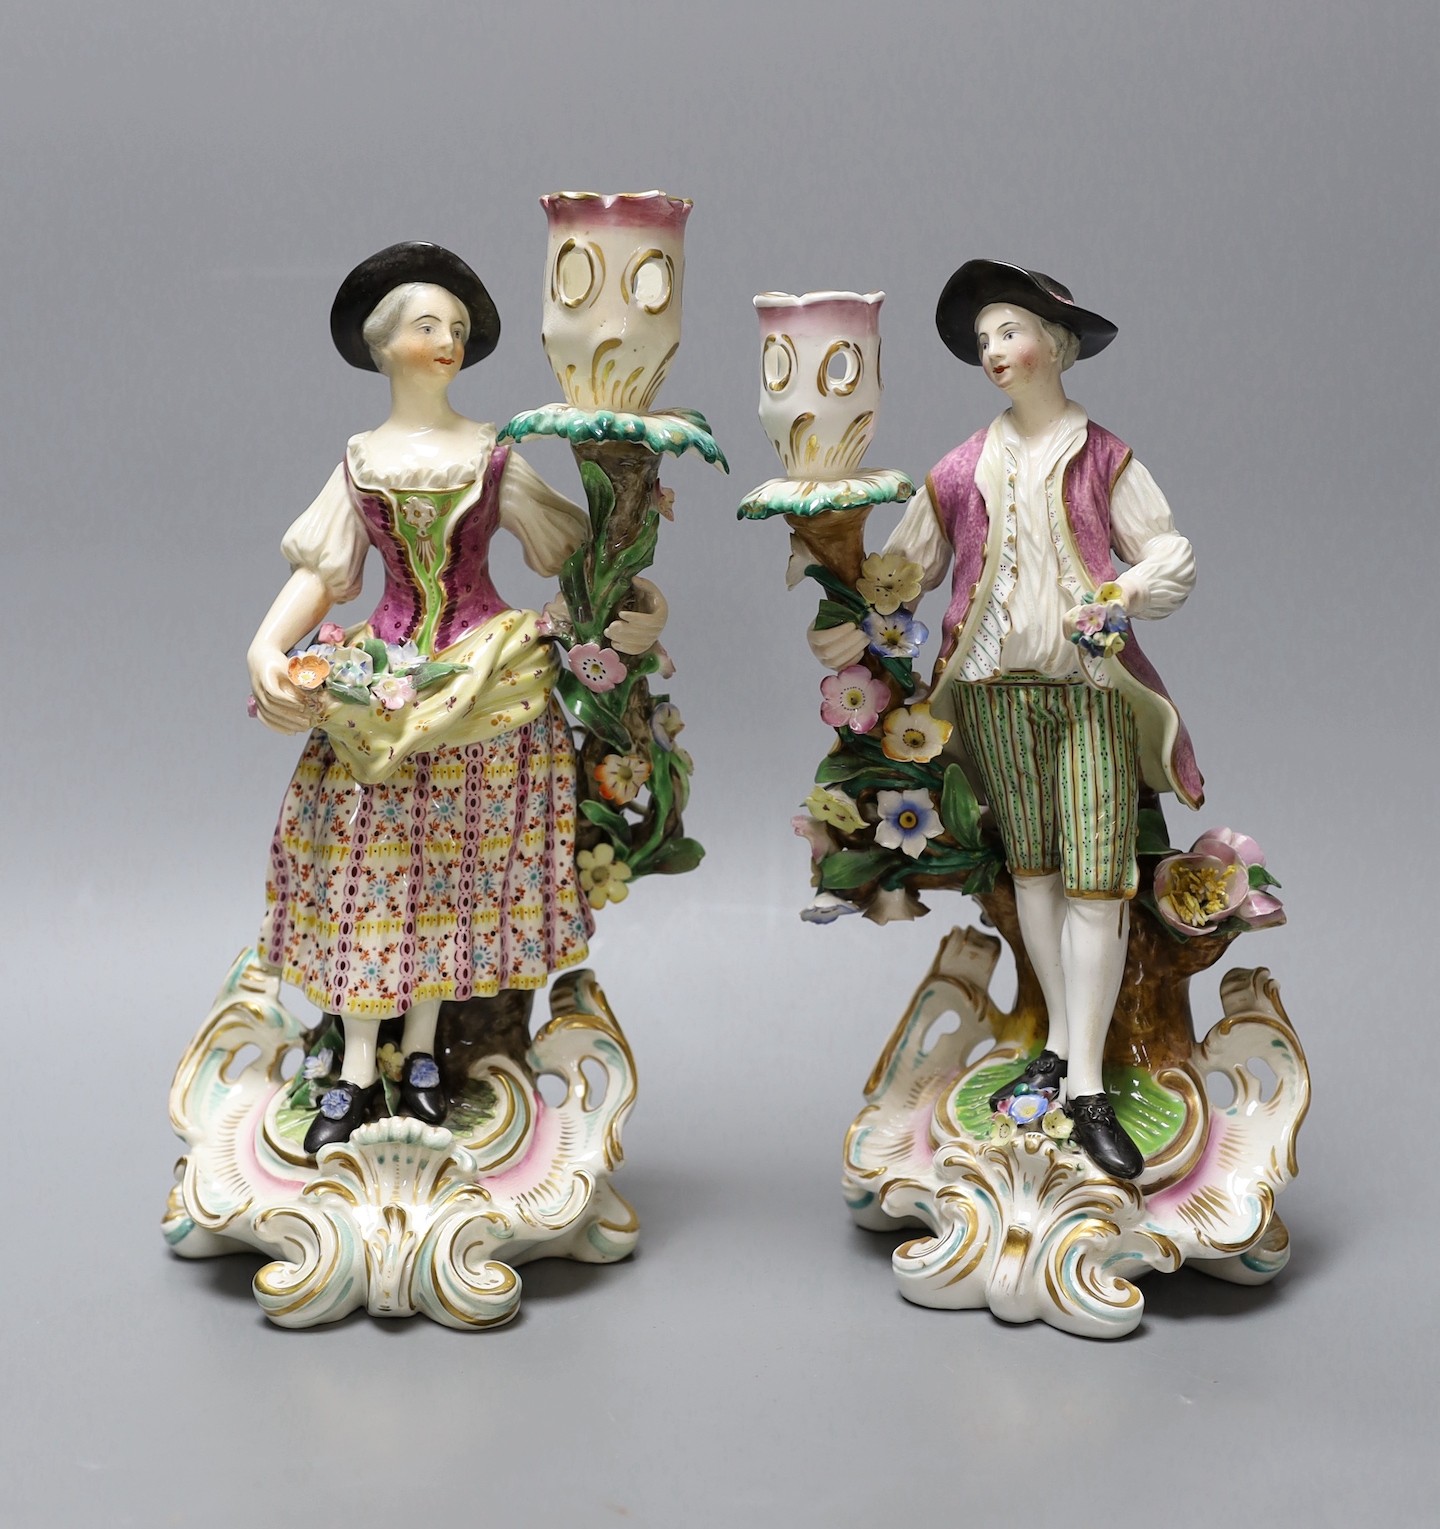 A near pair of Derby candlestick figures, tallest 25.5 cms high